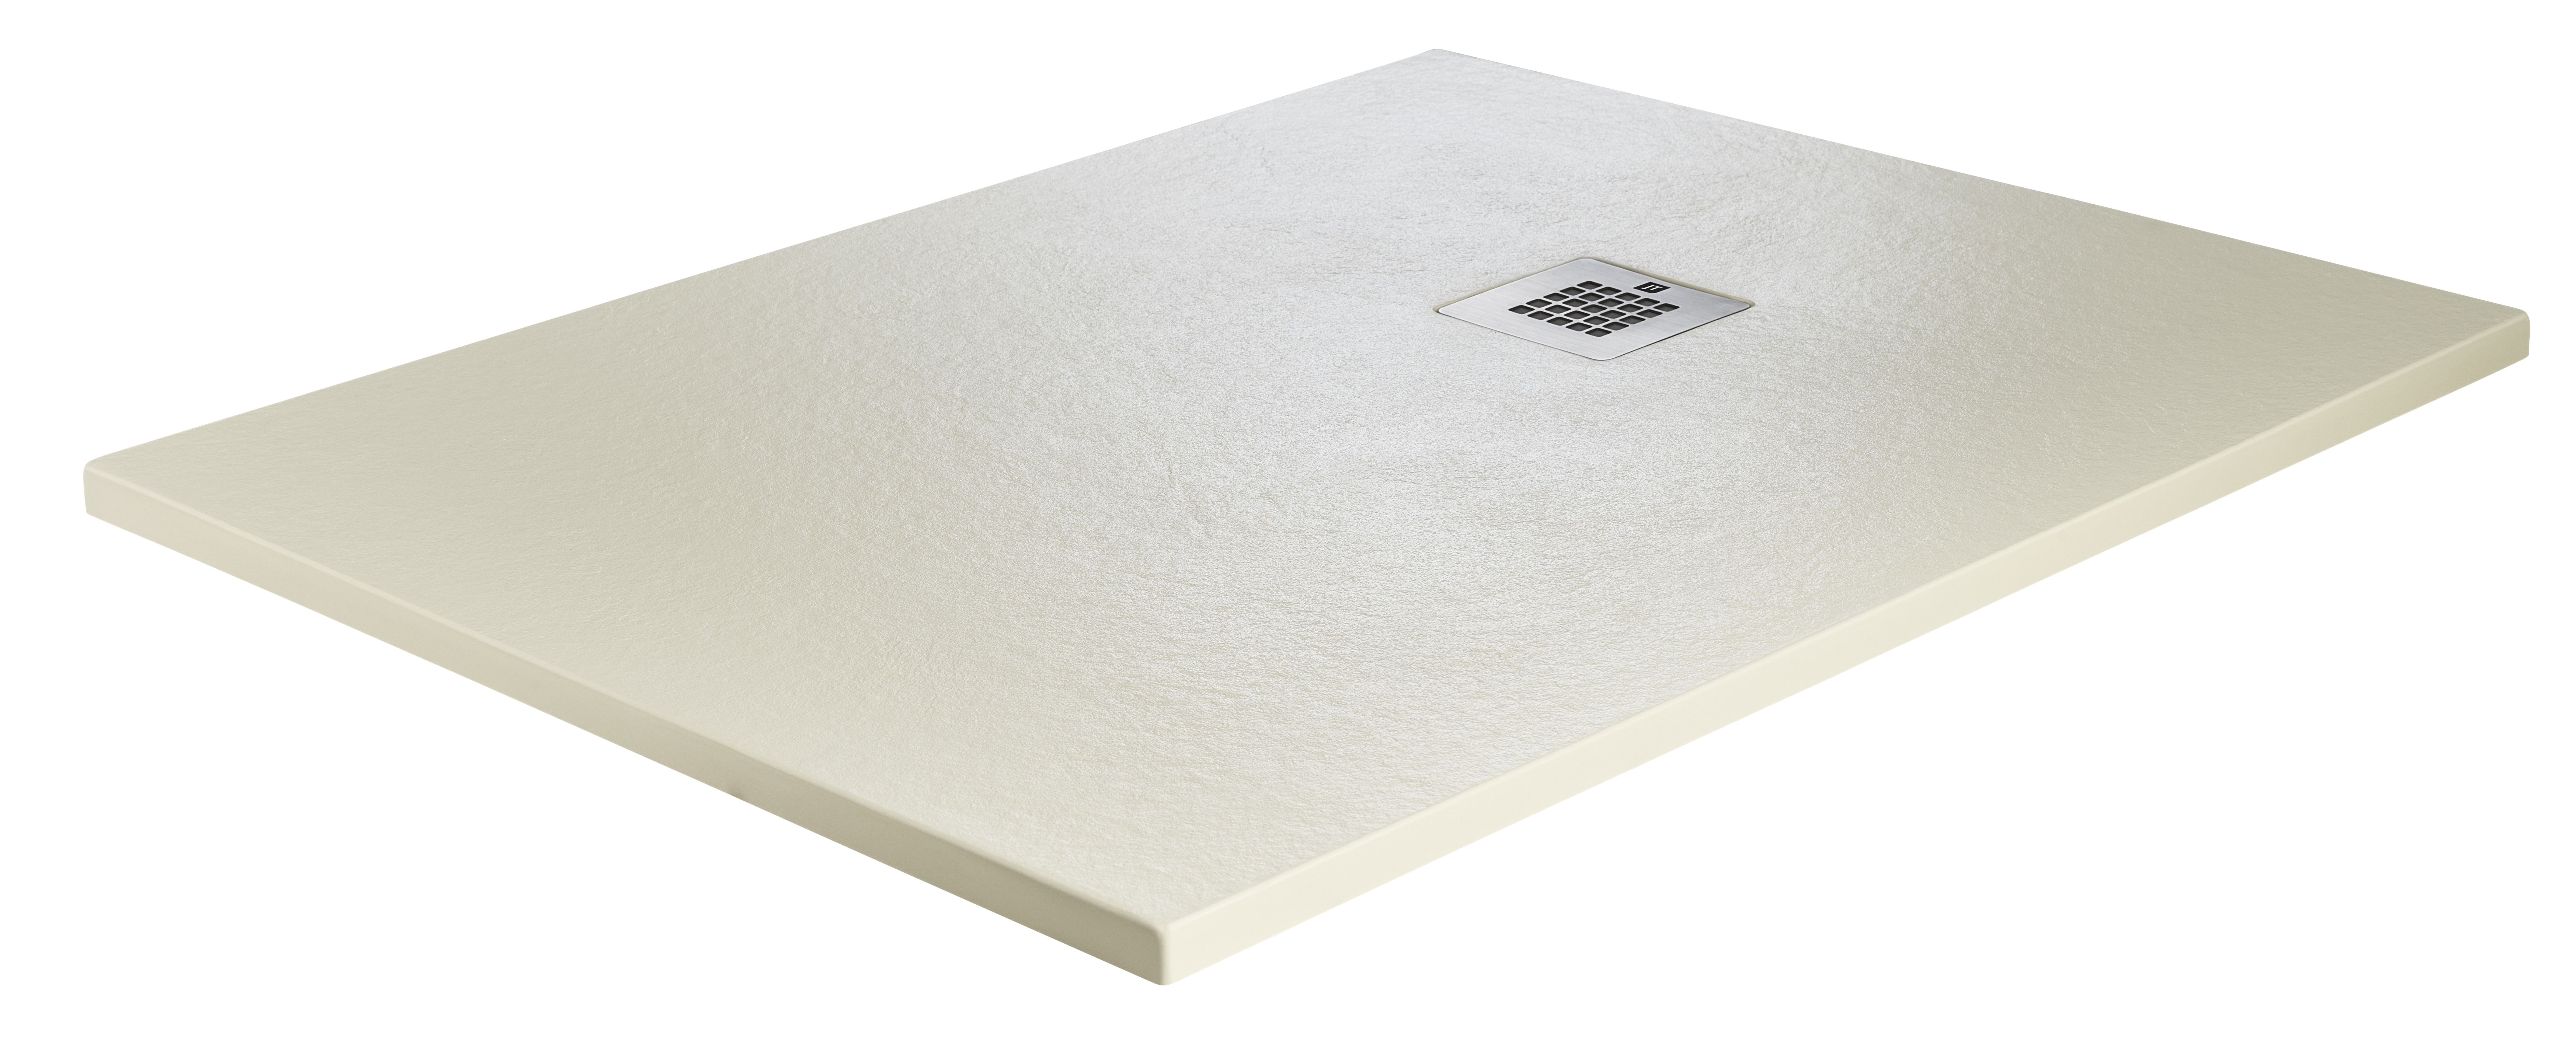 Just Trays Natural Flat to Floor Rectangular Shower Tray 1700x900mm Runswick Cream [NTL1790011]